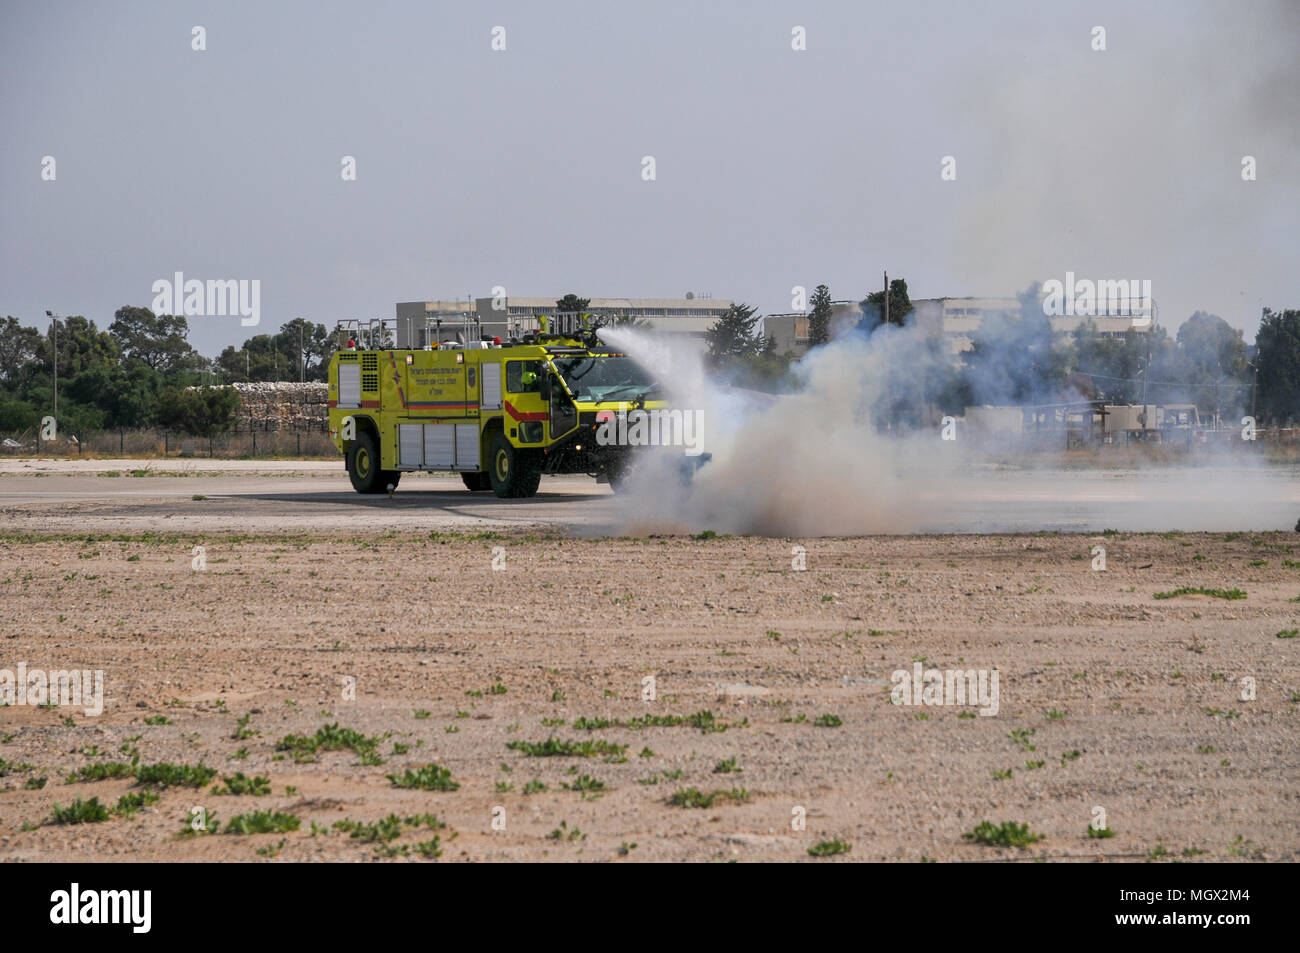 L'administration de l'aéroport d'Israël camion à incendie éteint un incendie lors d'une démonstration. Photographié à l'Aérodrome de Haïfa Banque D'Images